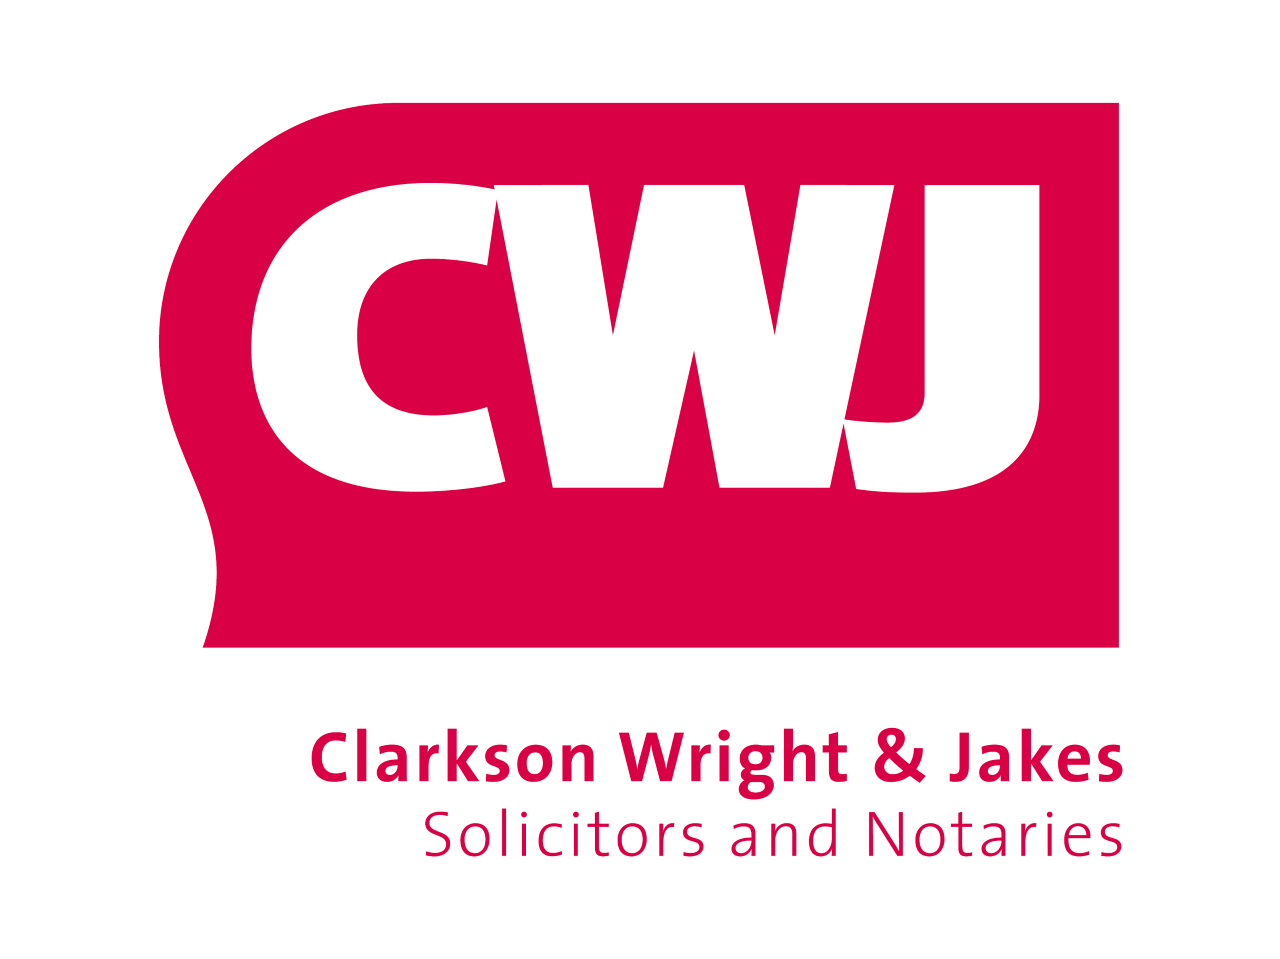 Clarkson Wright & Jakes Ltd